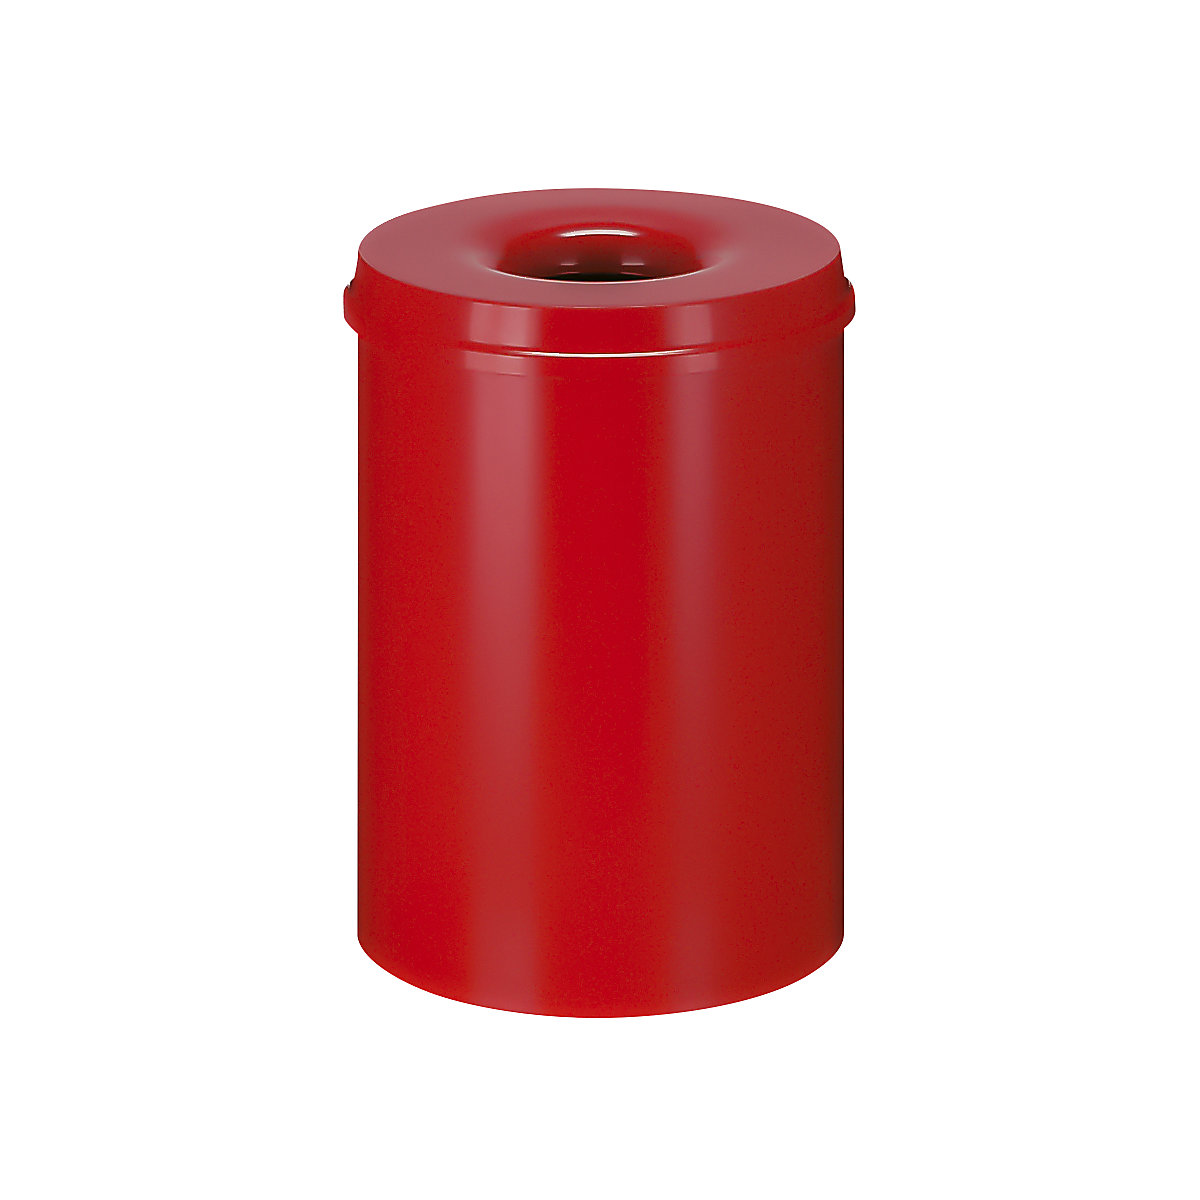 Varnostni koš za papir, jeklo, samodejno gašenje, prostornina 30 l, VxØ 470 x 335 mm, korpus rdeč / gasilna glava rdeča-8